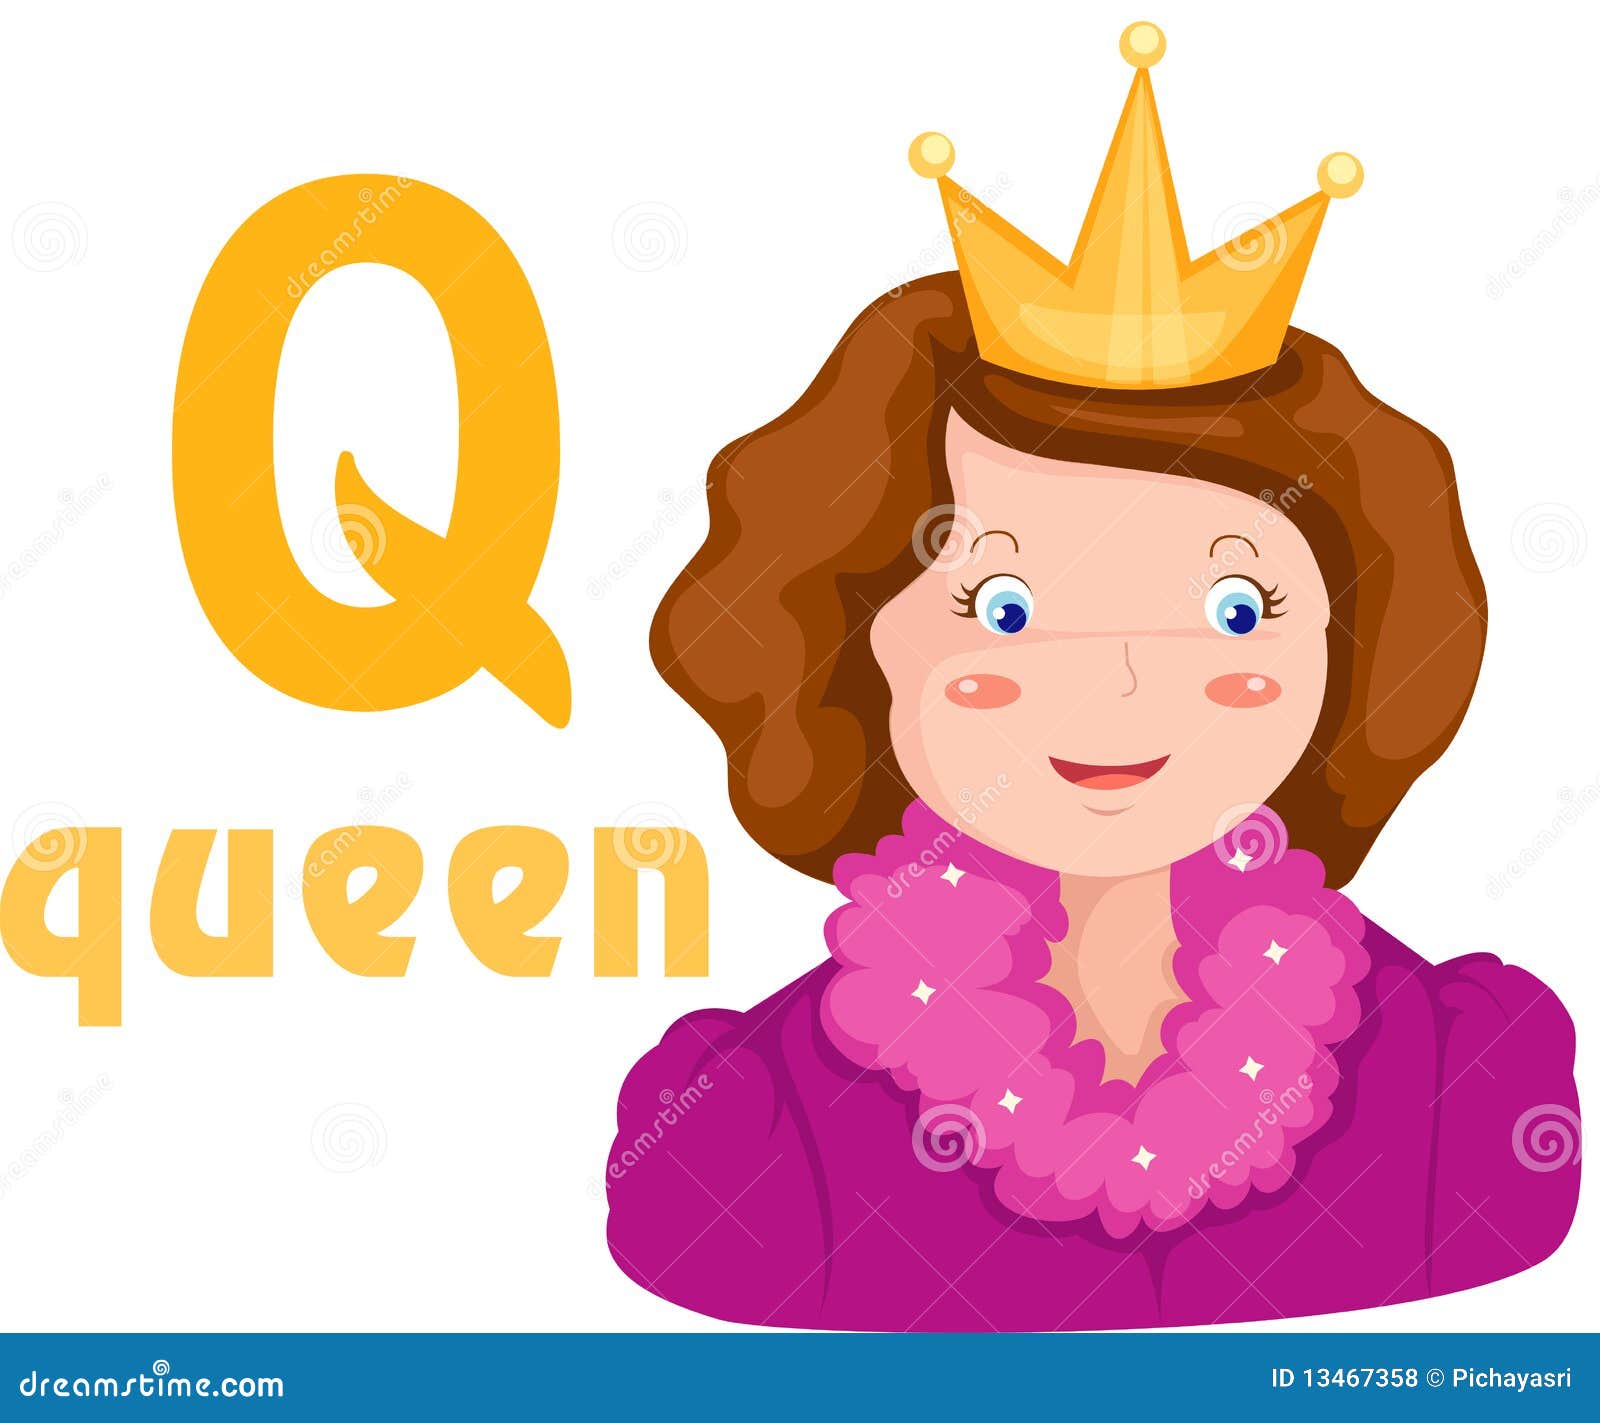 Песня королева на английском. Дети королевой. Princess английский для детей. Королева картинка для детей. Королева по английскому.